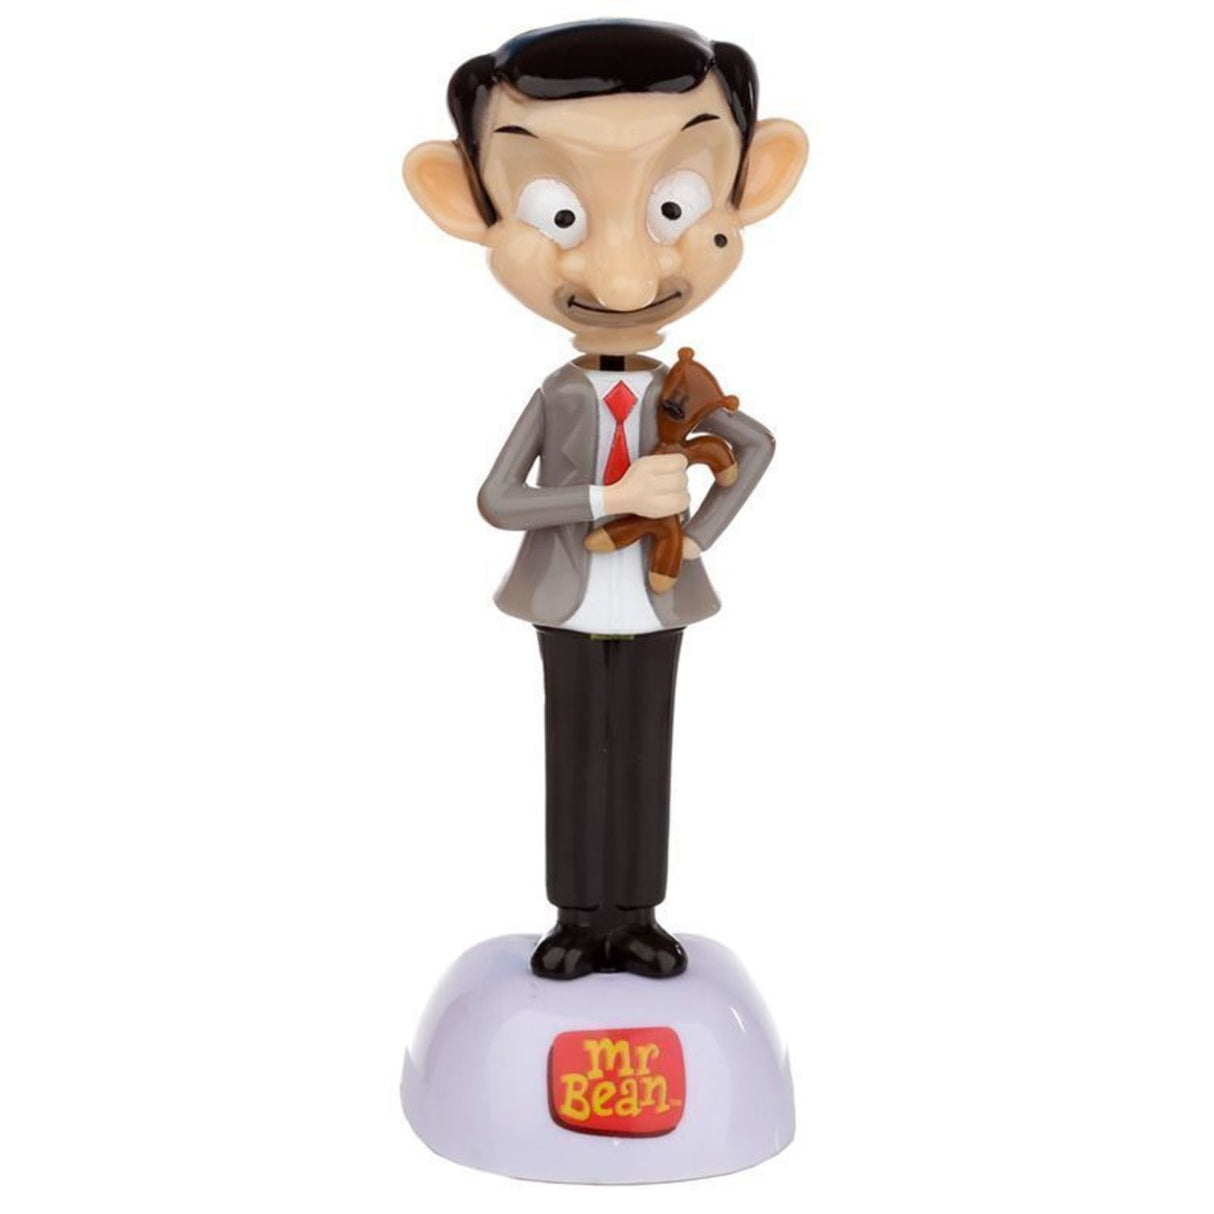 Mr. Bean Solarfigur - Jetzt kaufen und fröhlich wackeln